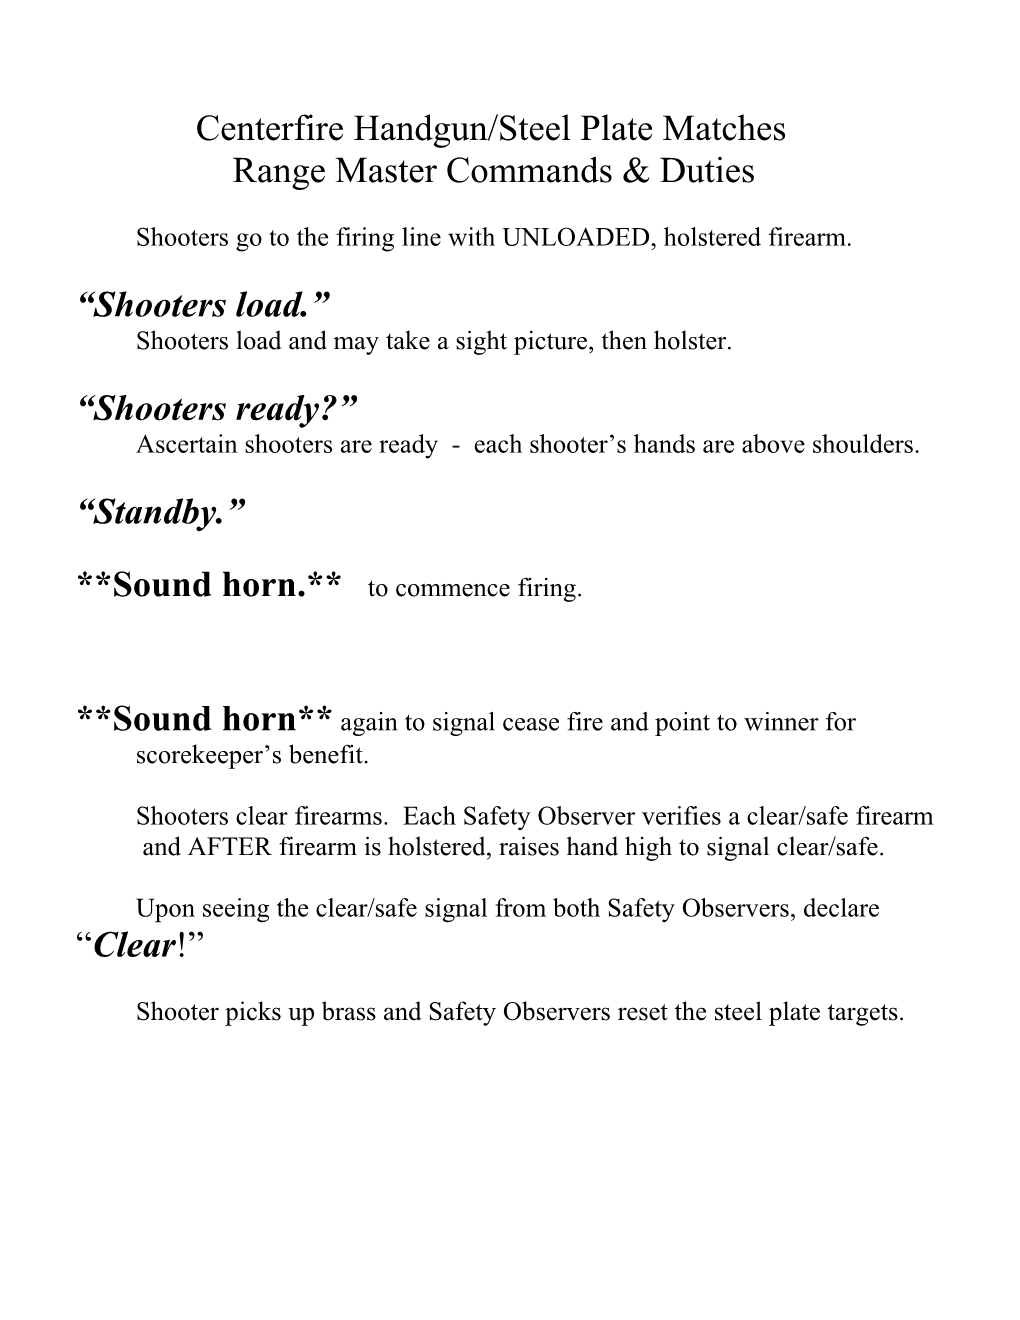 Range Master Commands & Duties